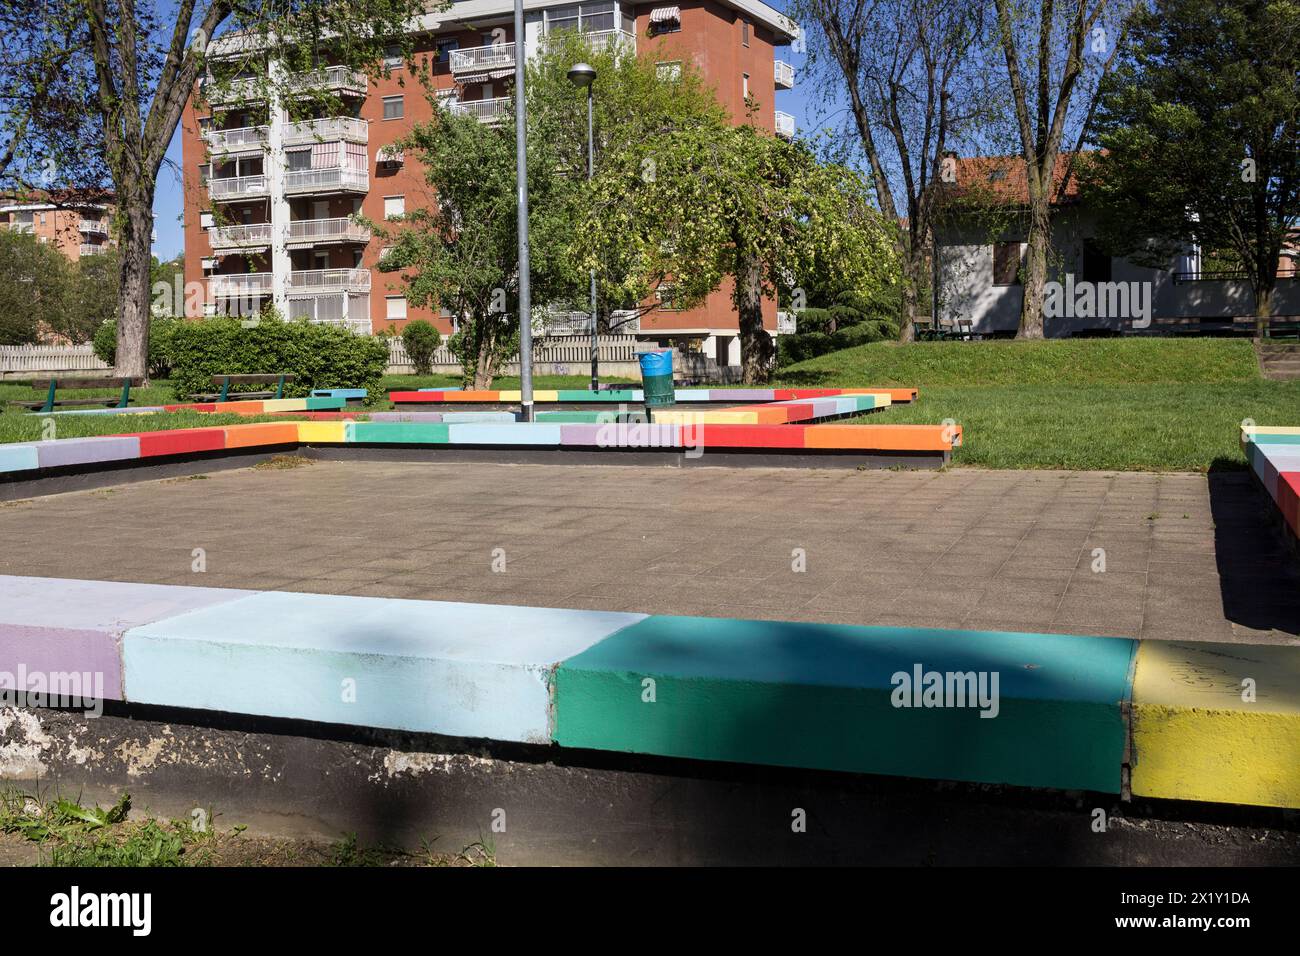 Jardin public avec des murs bas colorés dans l'arrière-pays de Turin, une importante ville italienne. Banque D'Images